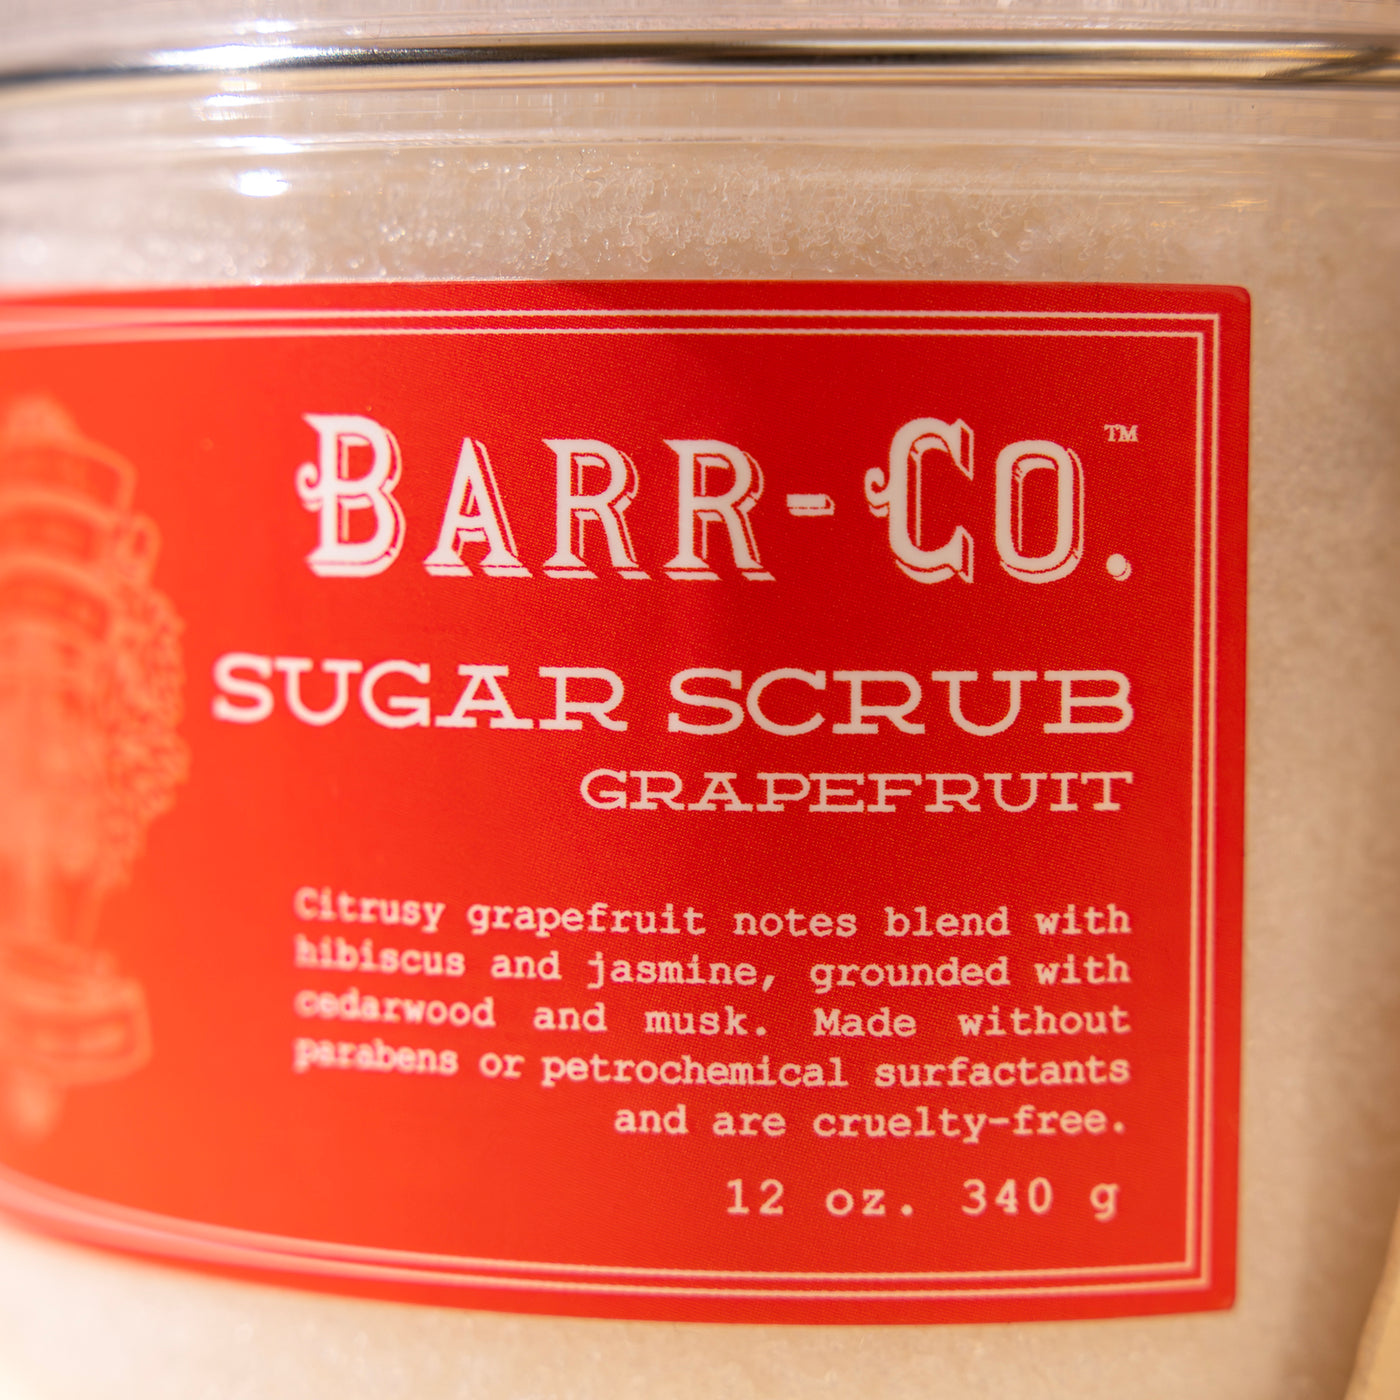 Barr-Co. Grapefruit Sugar Scrub